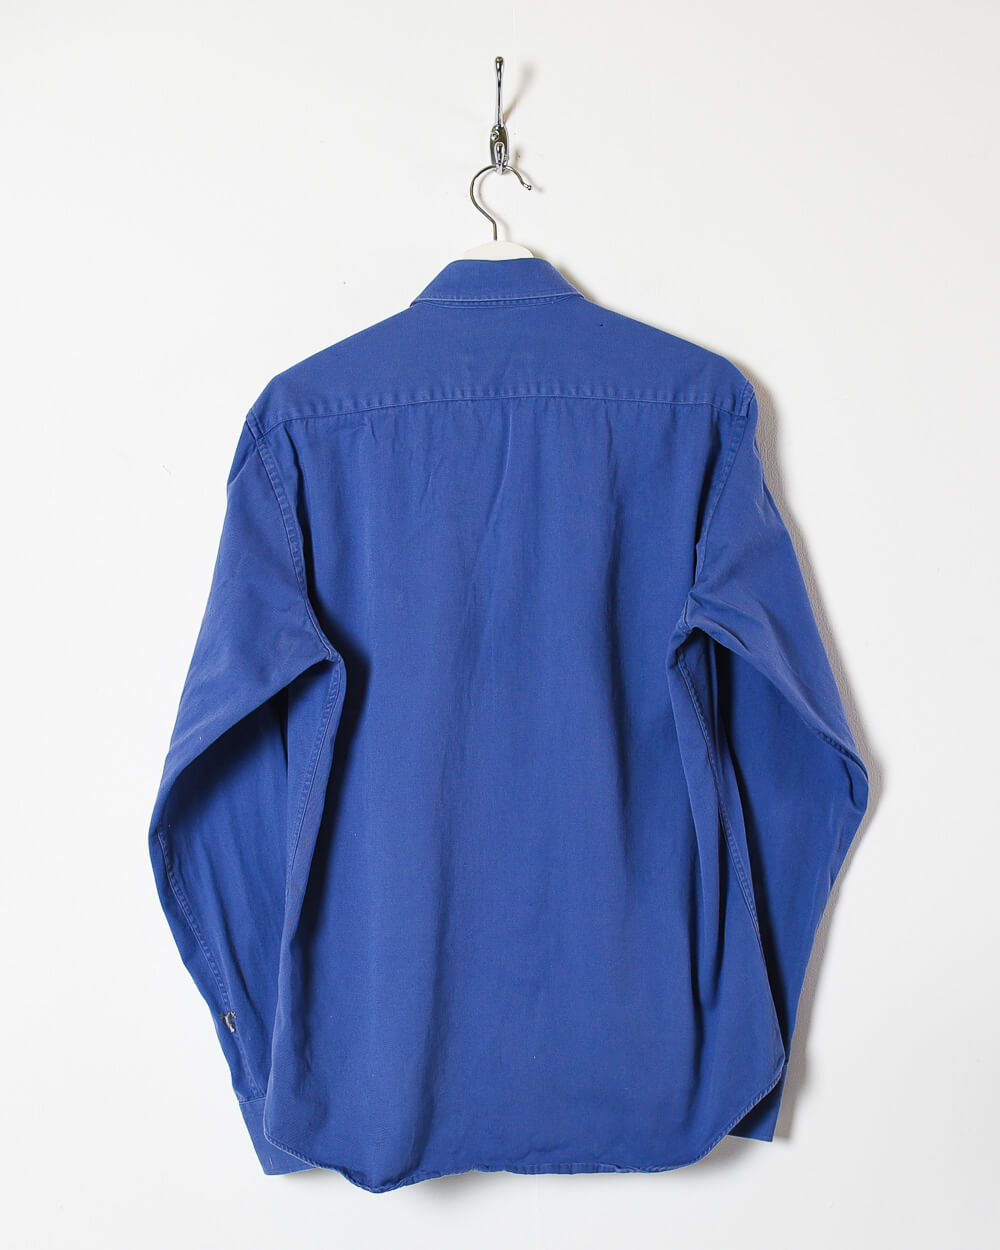 Blue Yves Saint Laurent Shirt - Medium